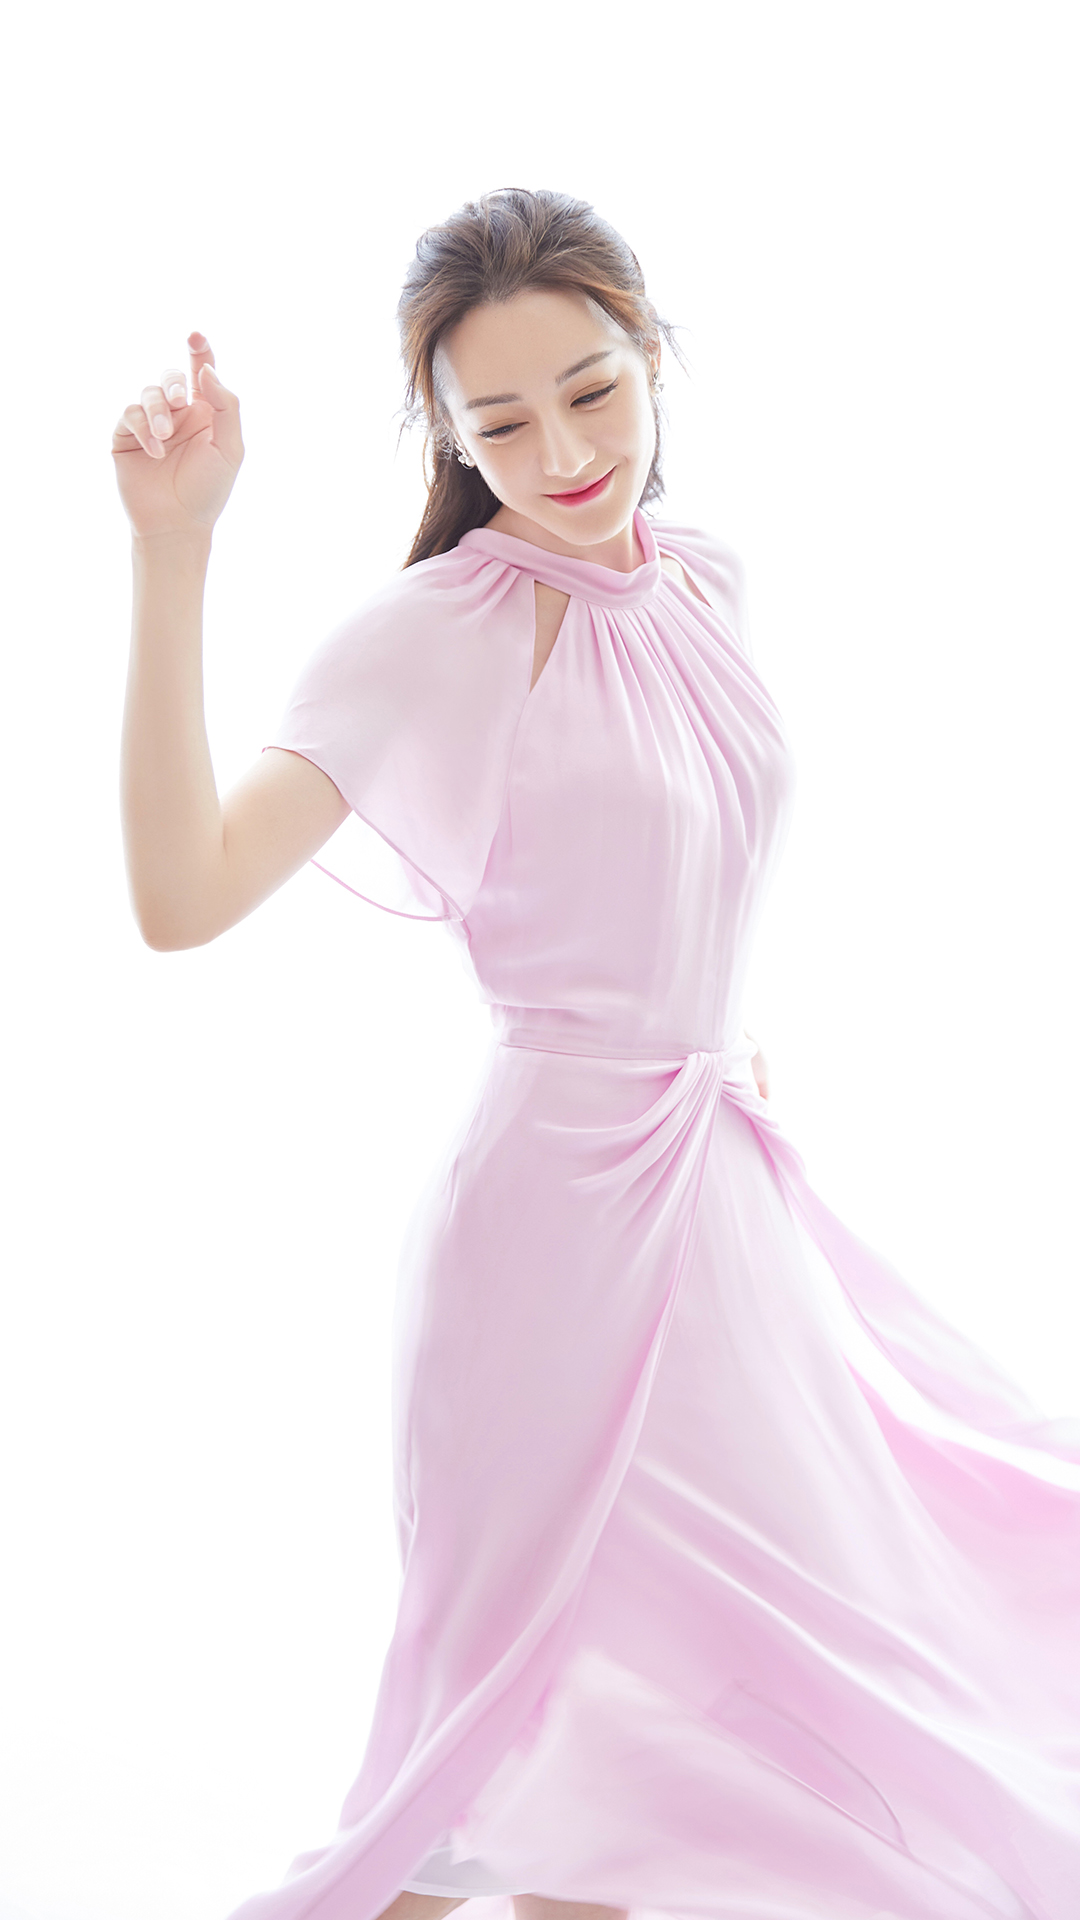 迪丽热巴粉色裙性感时尚写真图片手机壁纸